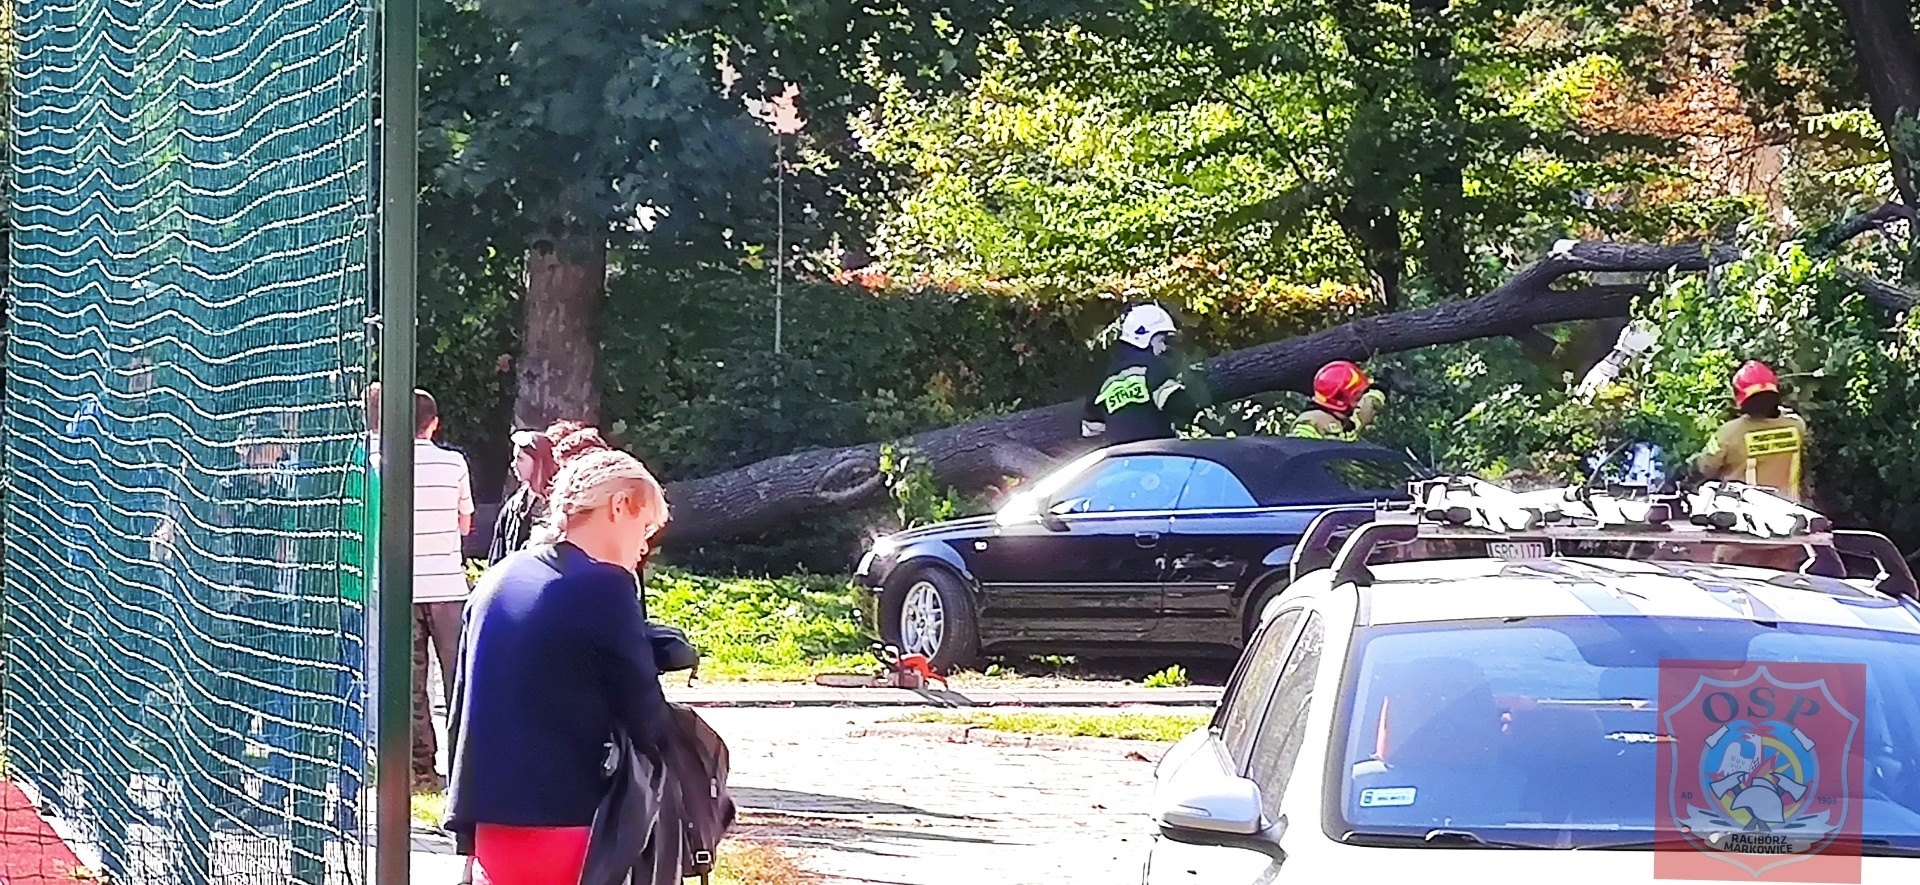 Strażacy pocięli drzewo na kawałki, a następnie pomogli w przepchnięciu uszkodzonych samochodów. W zdarzeniu nikt nie ucierpiał (fot. OSP Racibórz Markowice).